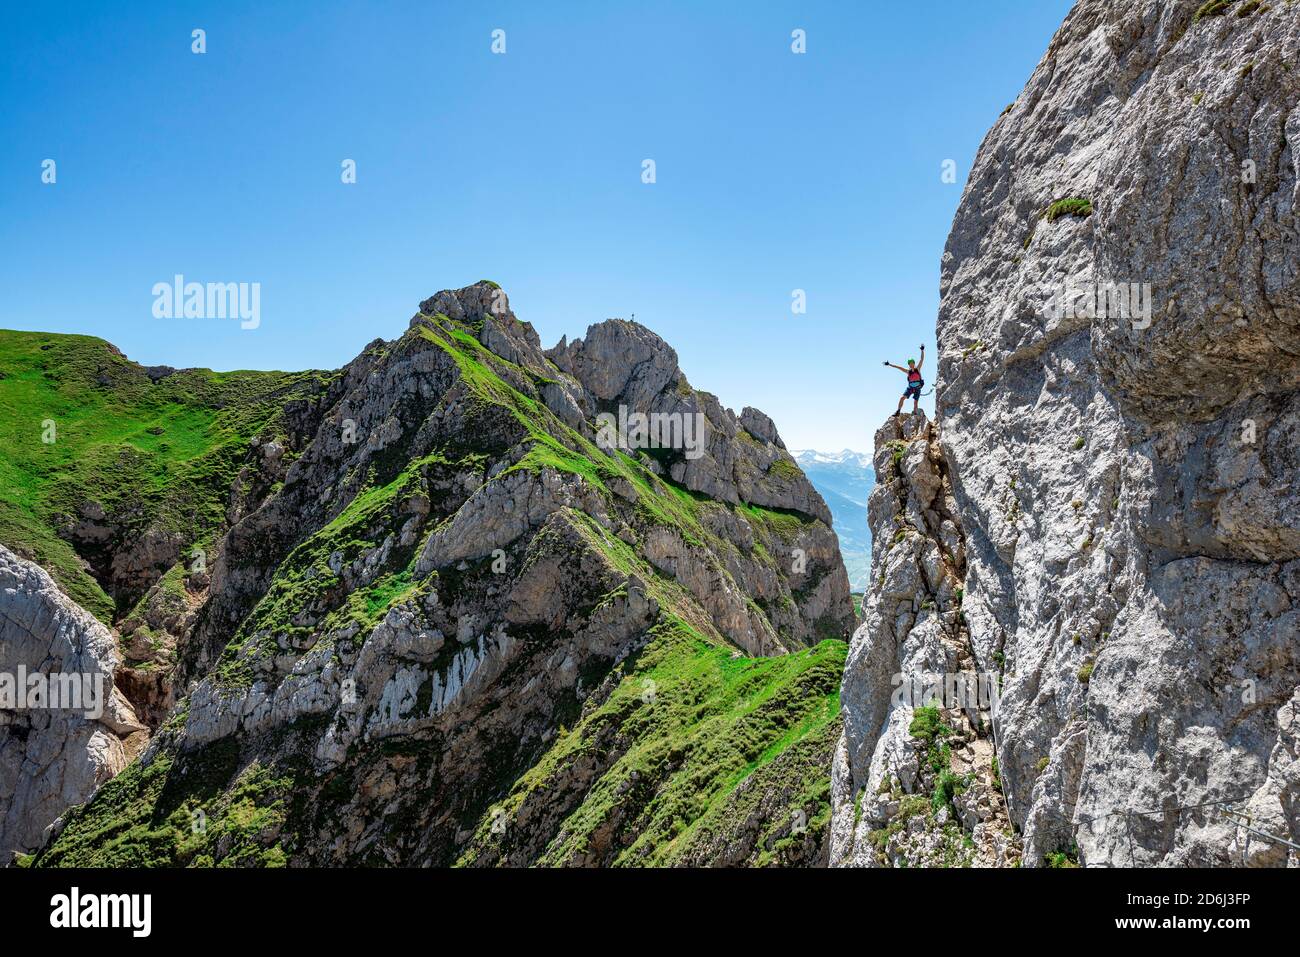 Junger Mann streckt die Arme in die Luft, Klettersteig zur Seekarlspitze, 5-Gipfel-Klettersteig, Wanderung am Rofangebirge, Tirol, Österreich Stockfoto